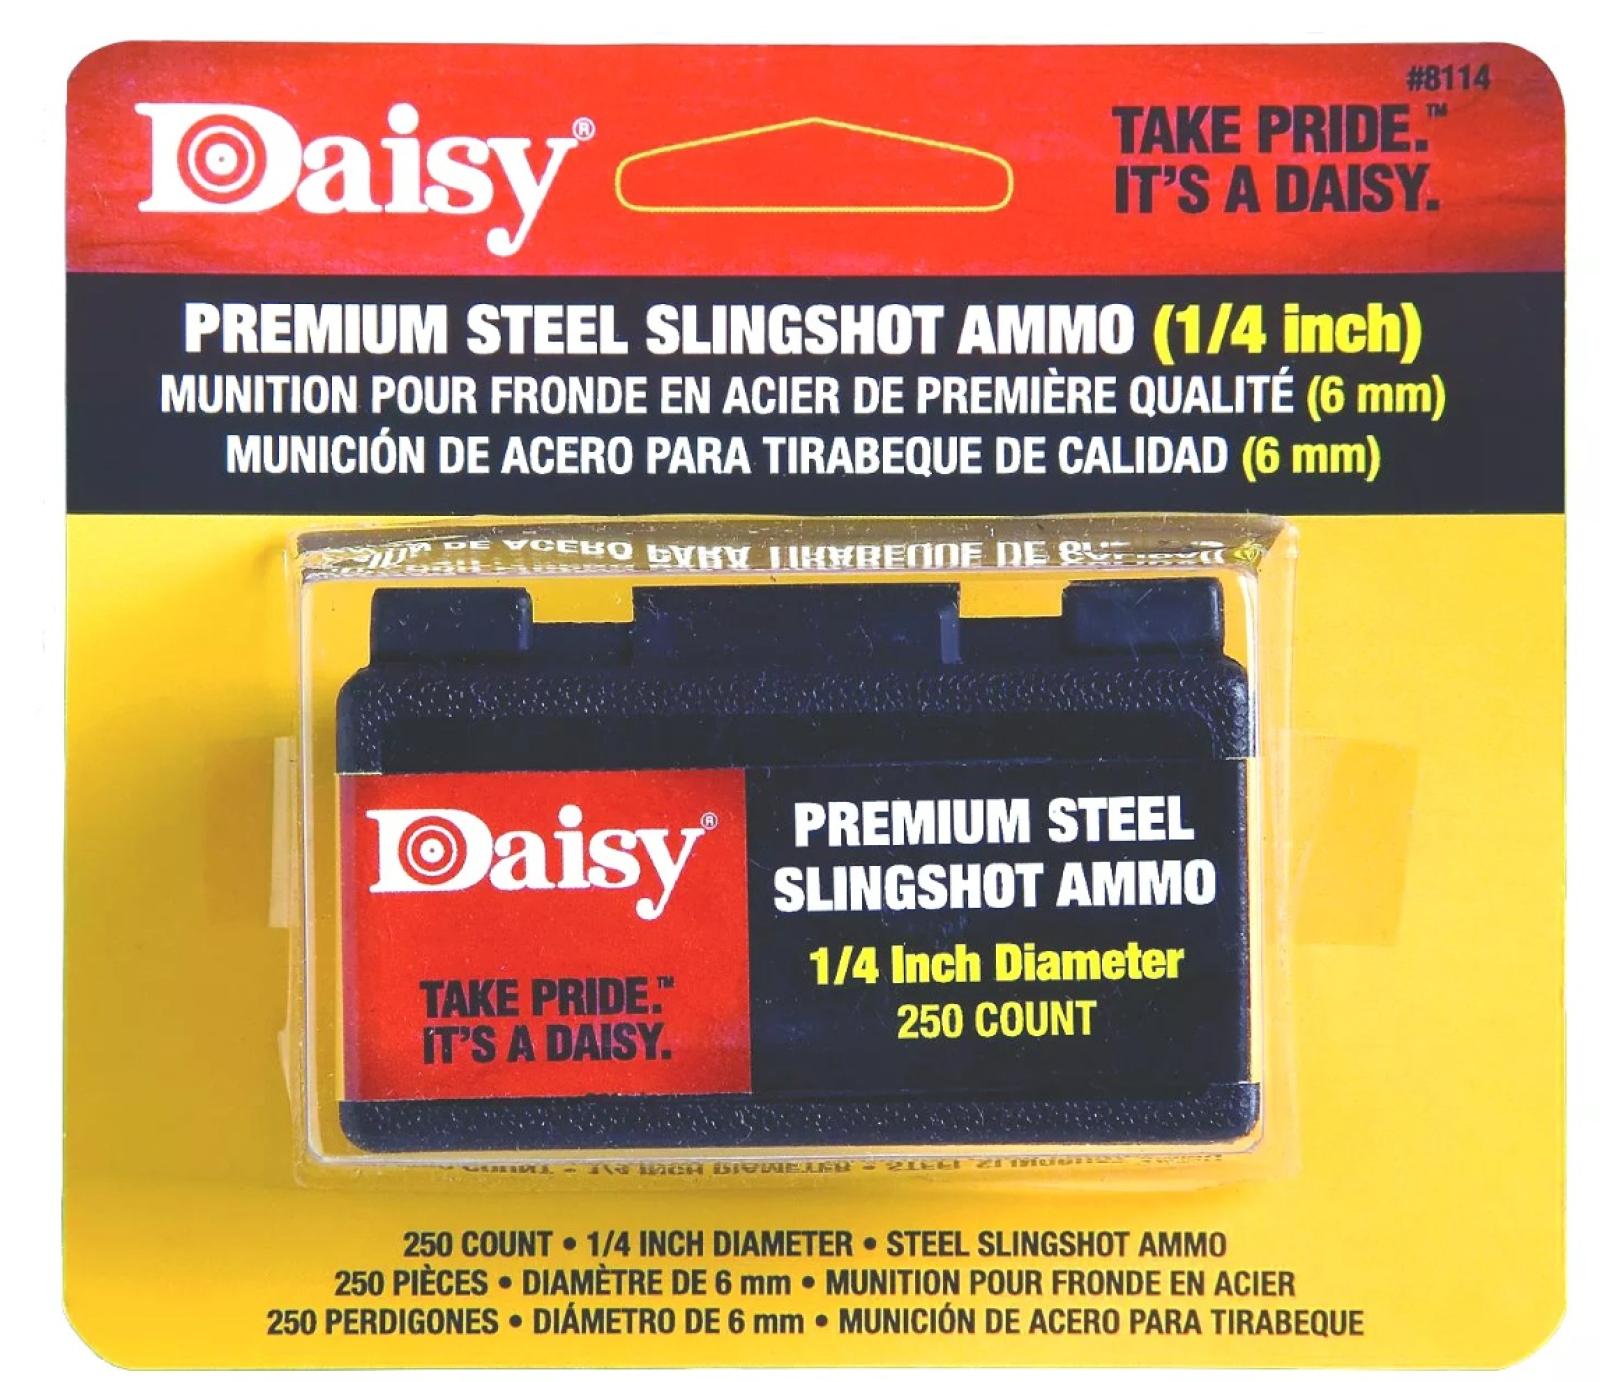 Daisy PowerLine 1/4-inch Steel Slingshot Ammo